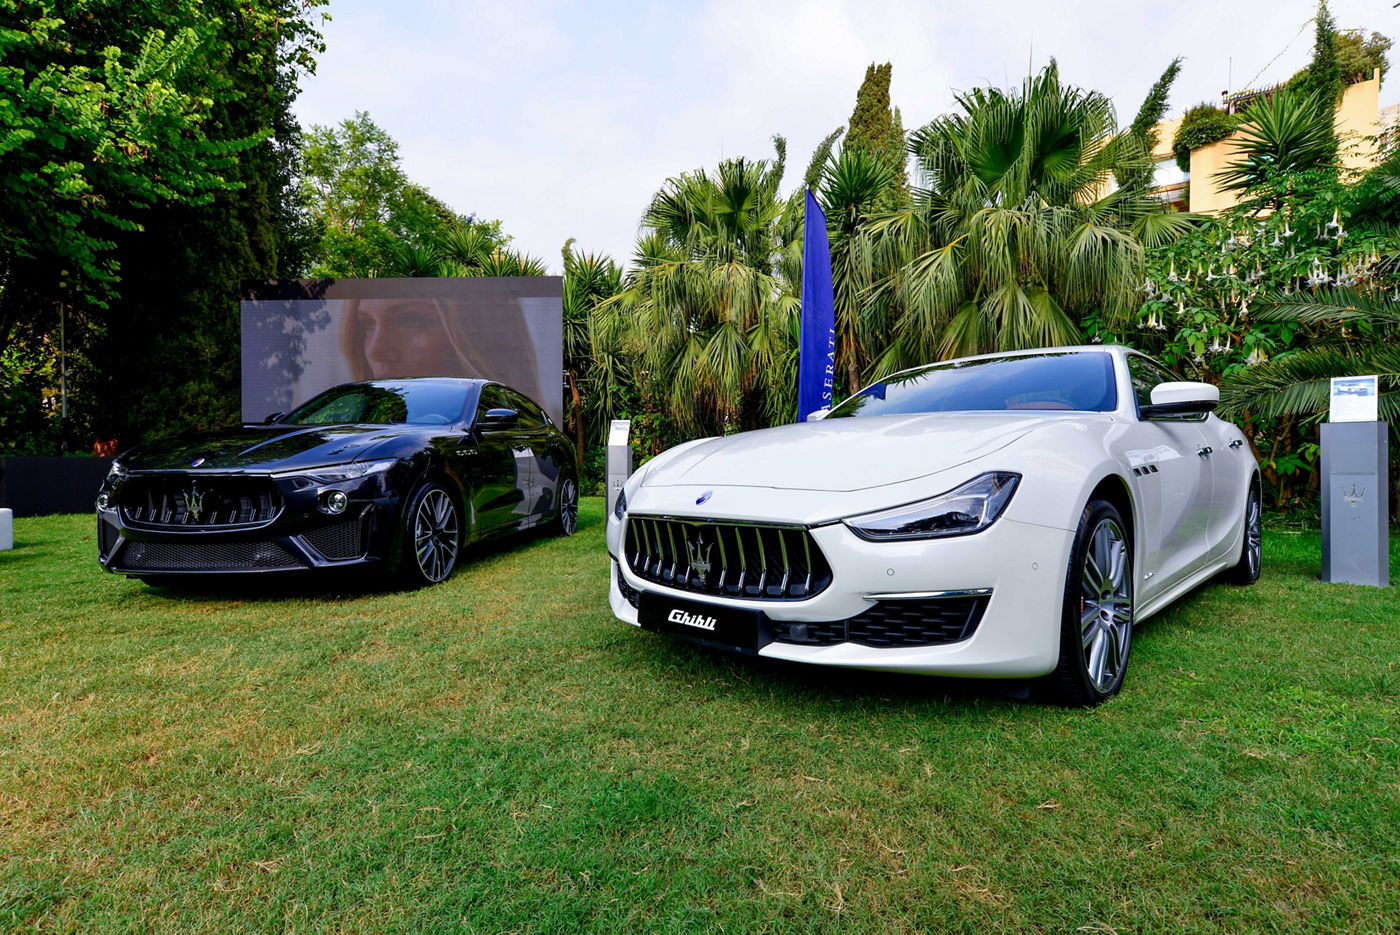 Maserati Ghibli y otro modelo Maserati en un césped en la villa Cochrane